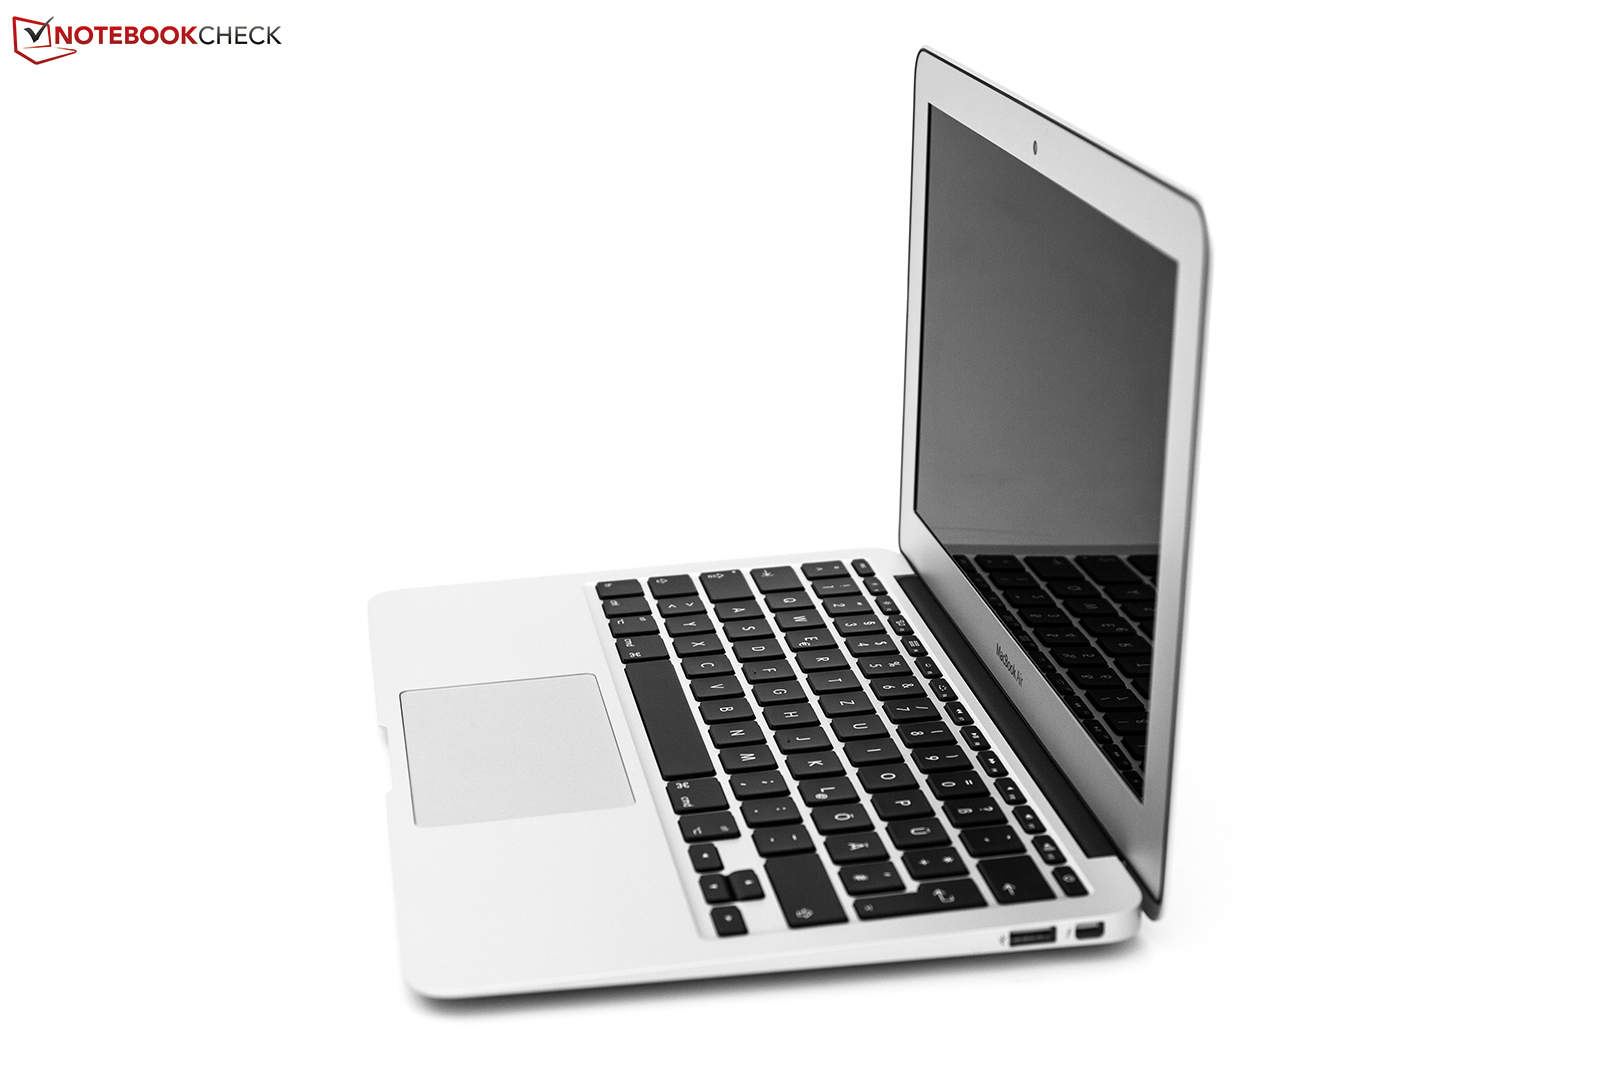 macbook air 11 inch 2011 dual display